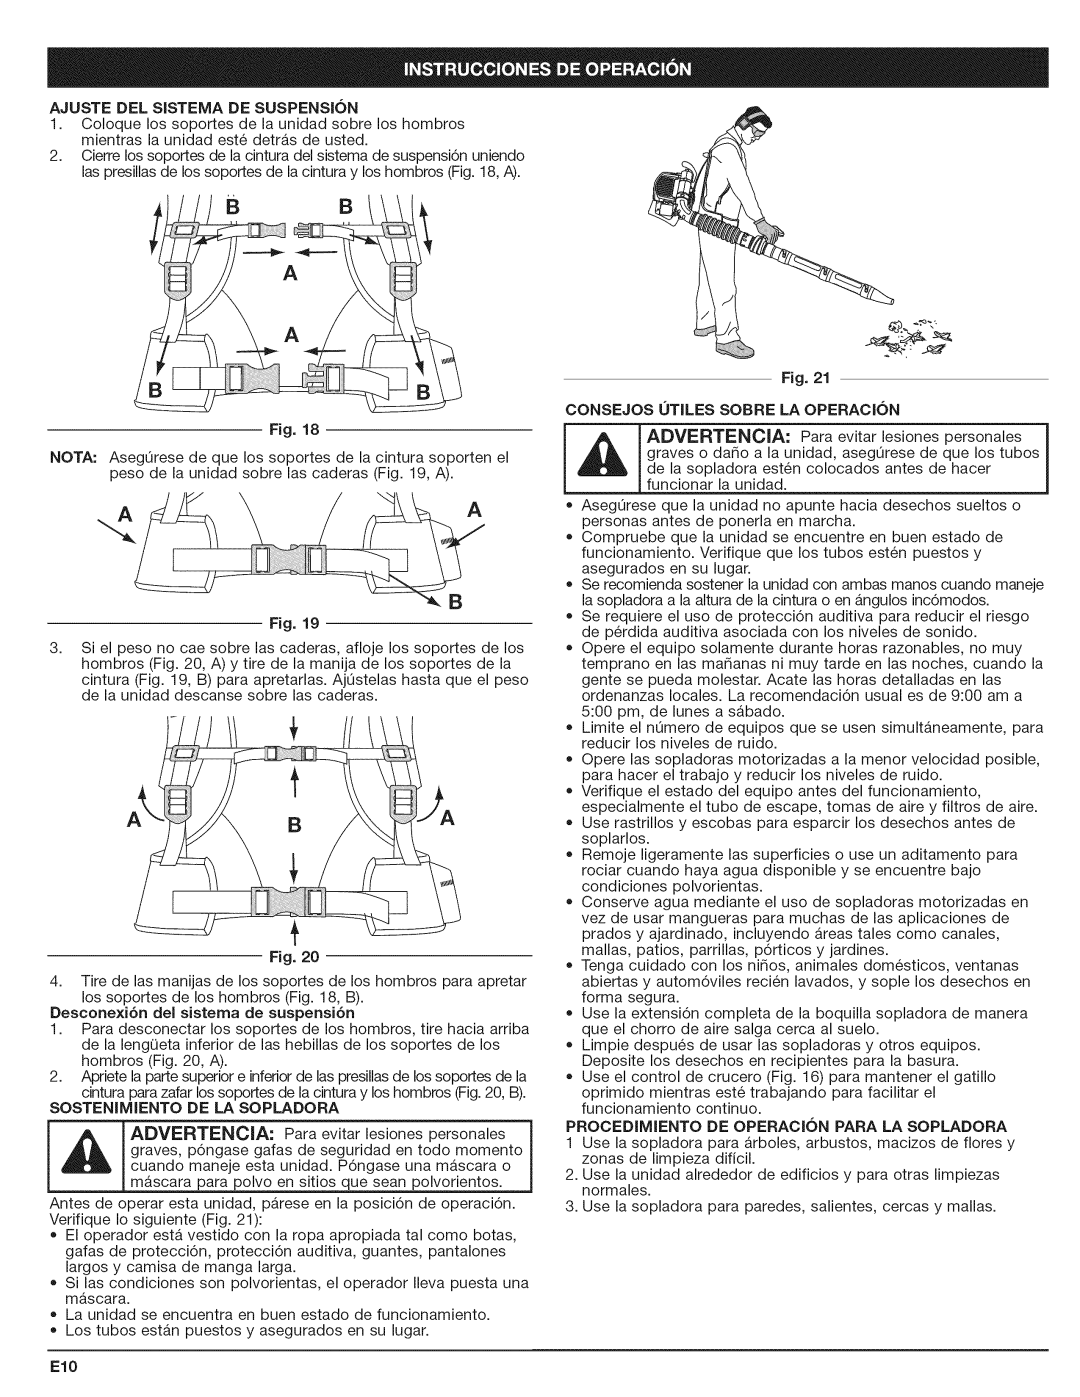 Craftsman 316.794801 manual Ajustedel Sistema De Suspension, Fig, Procedimiento De Operacion Para La Sopladora 